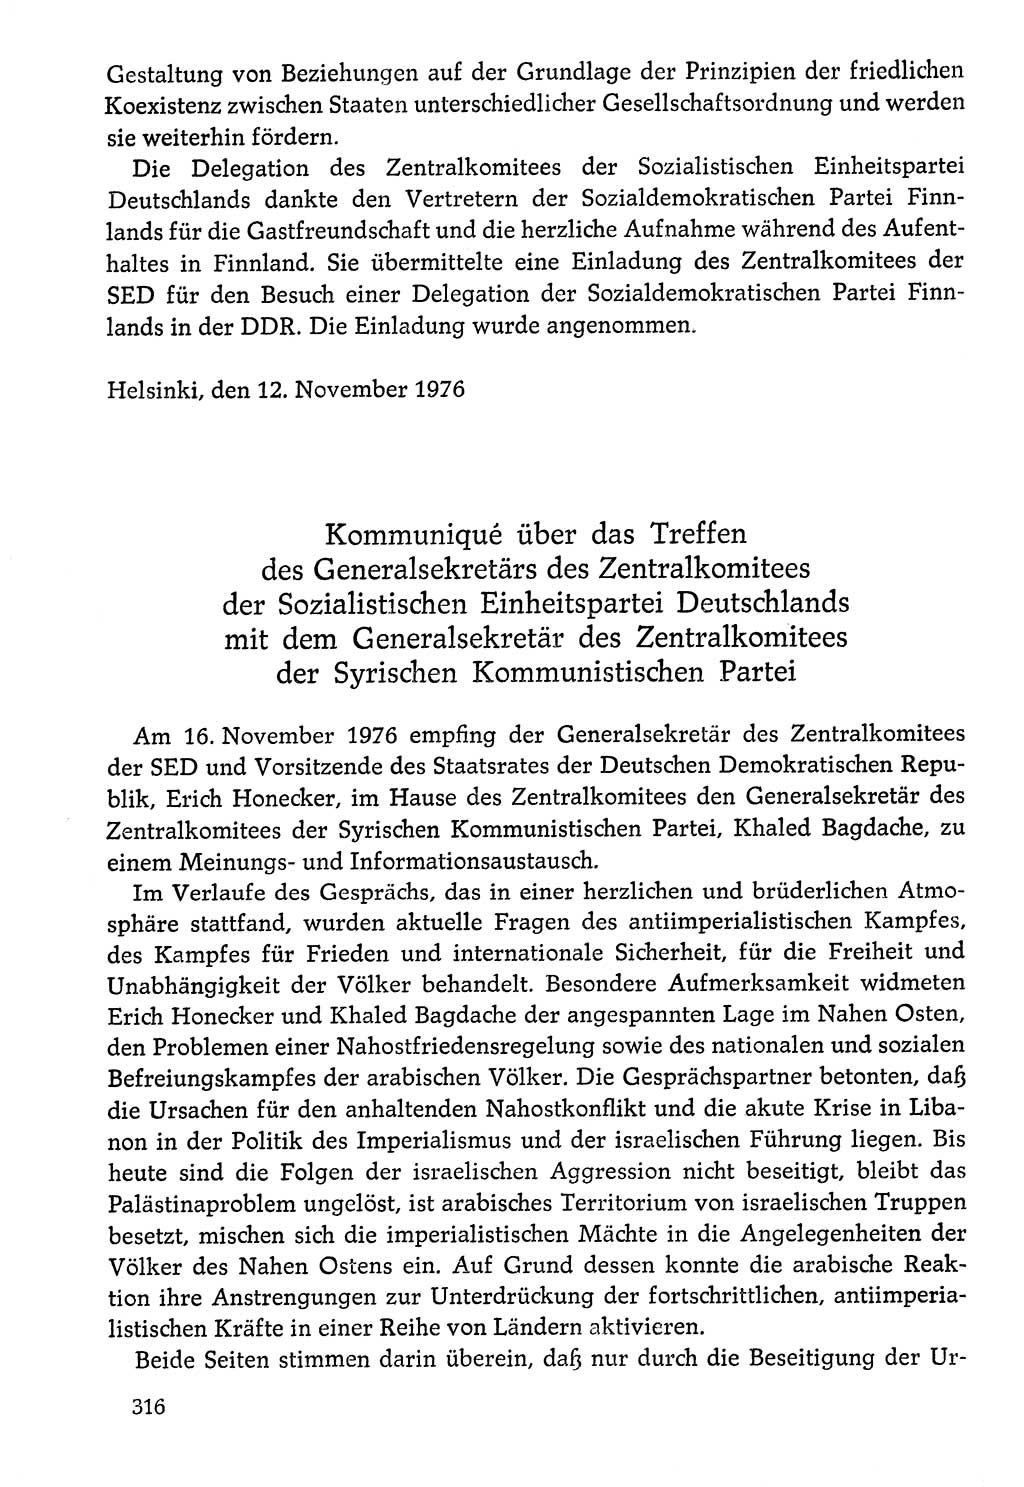 Dokumente der Sozialistischen Einheitspartei Deutschlands (SED) [Deutsche Demokratische Republik (DDR)] 1976-1977, Seite 316 (Dok. SED DDR 1976-1977, S. 316)